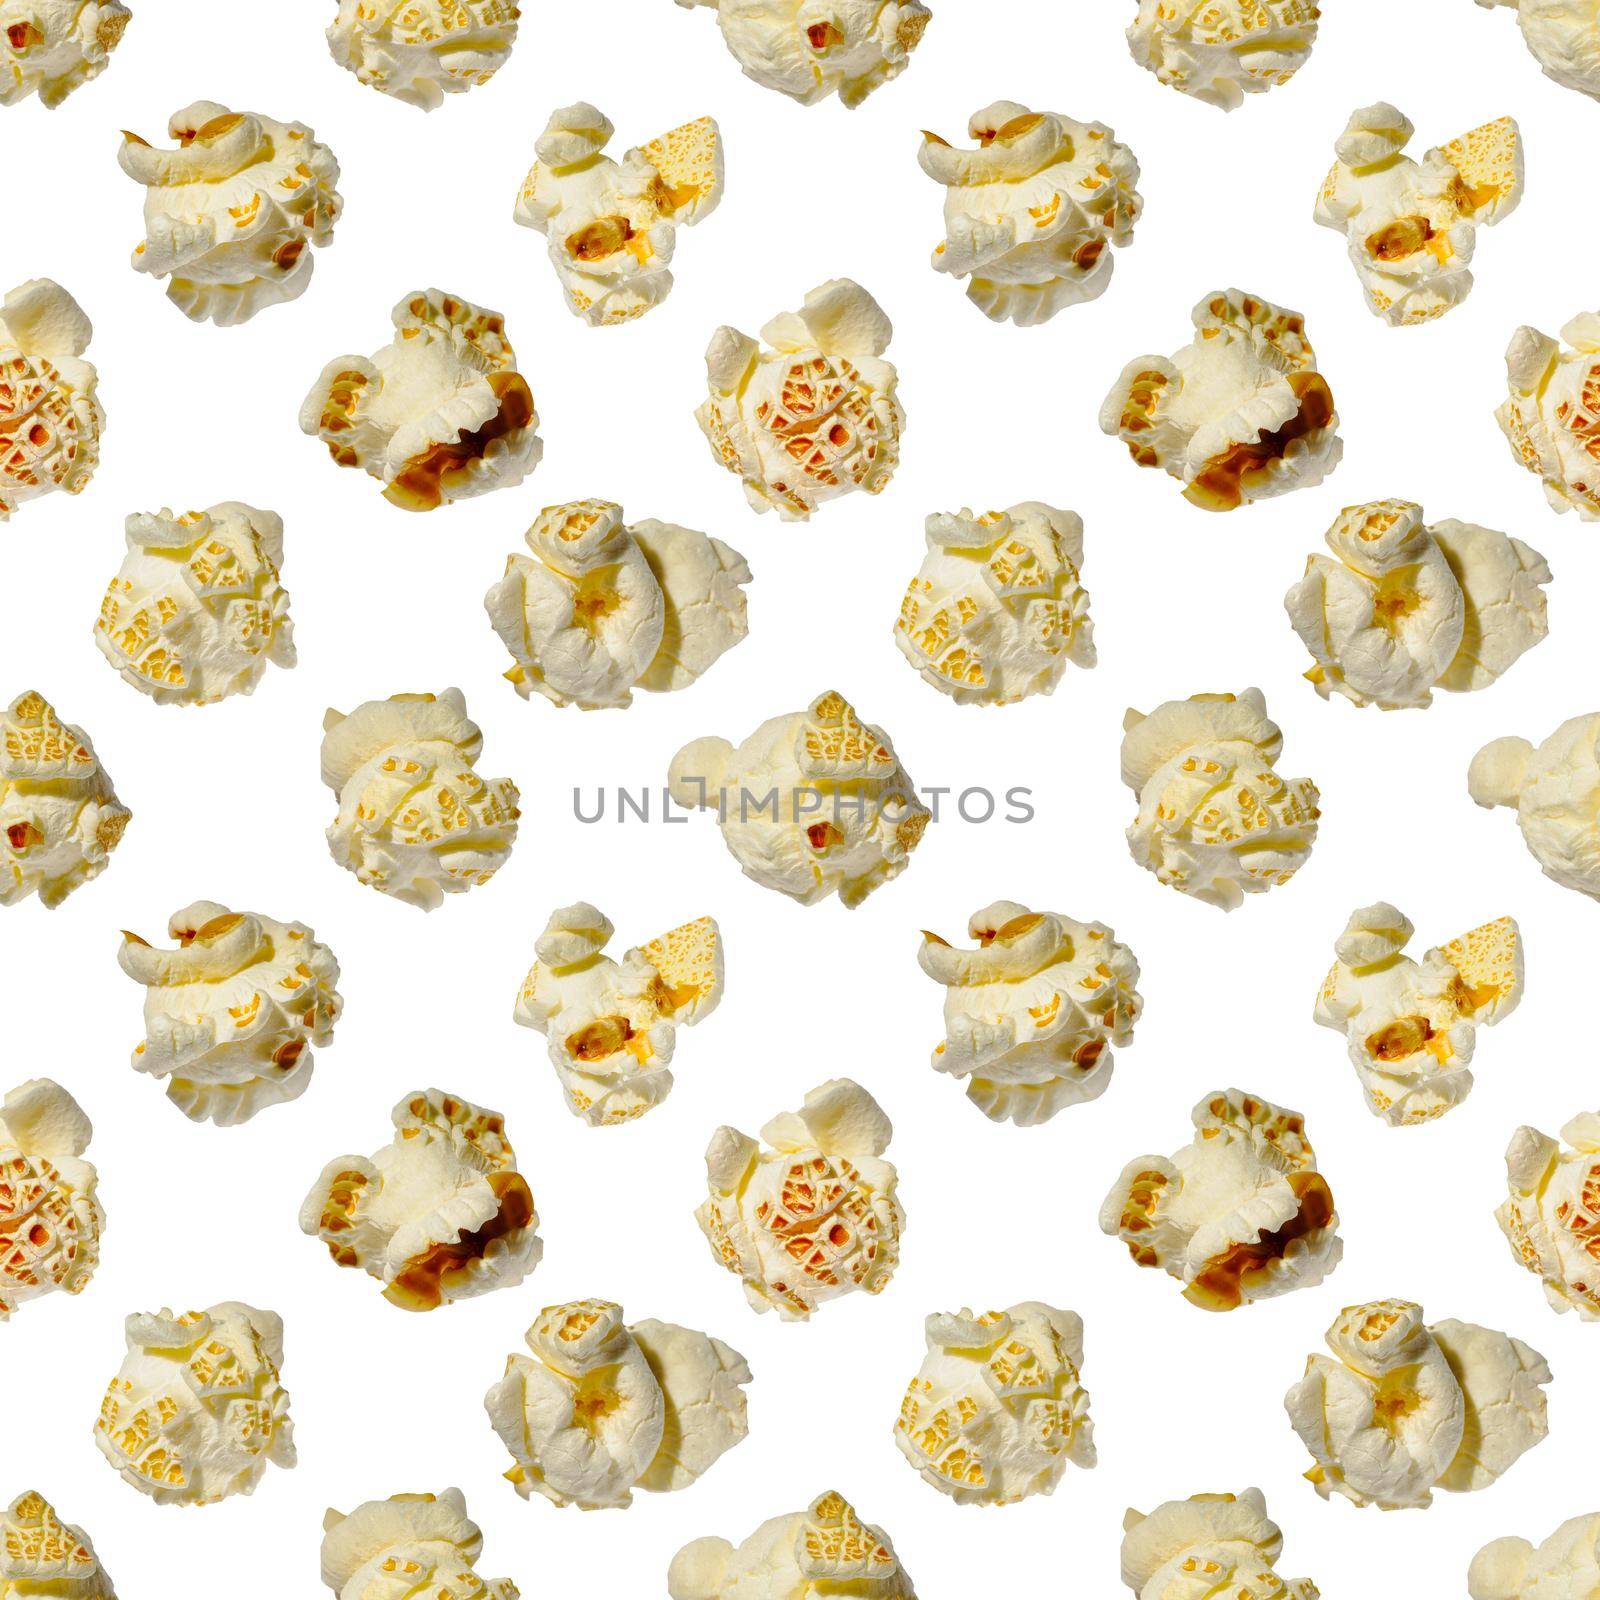 seamless pattern - popcorn. popcorn on a white background, pattern by PhotoTime